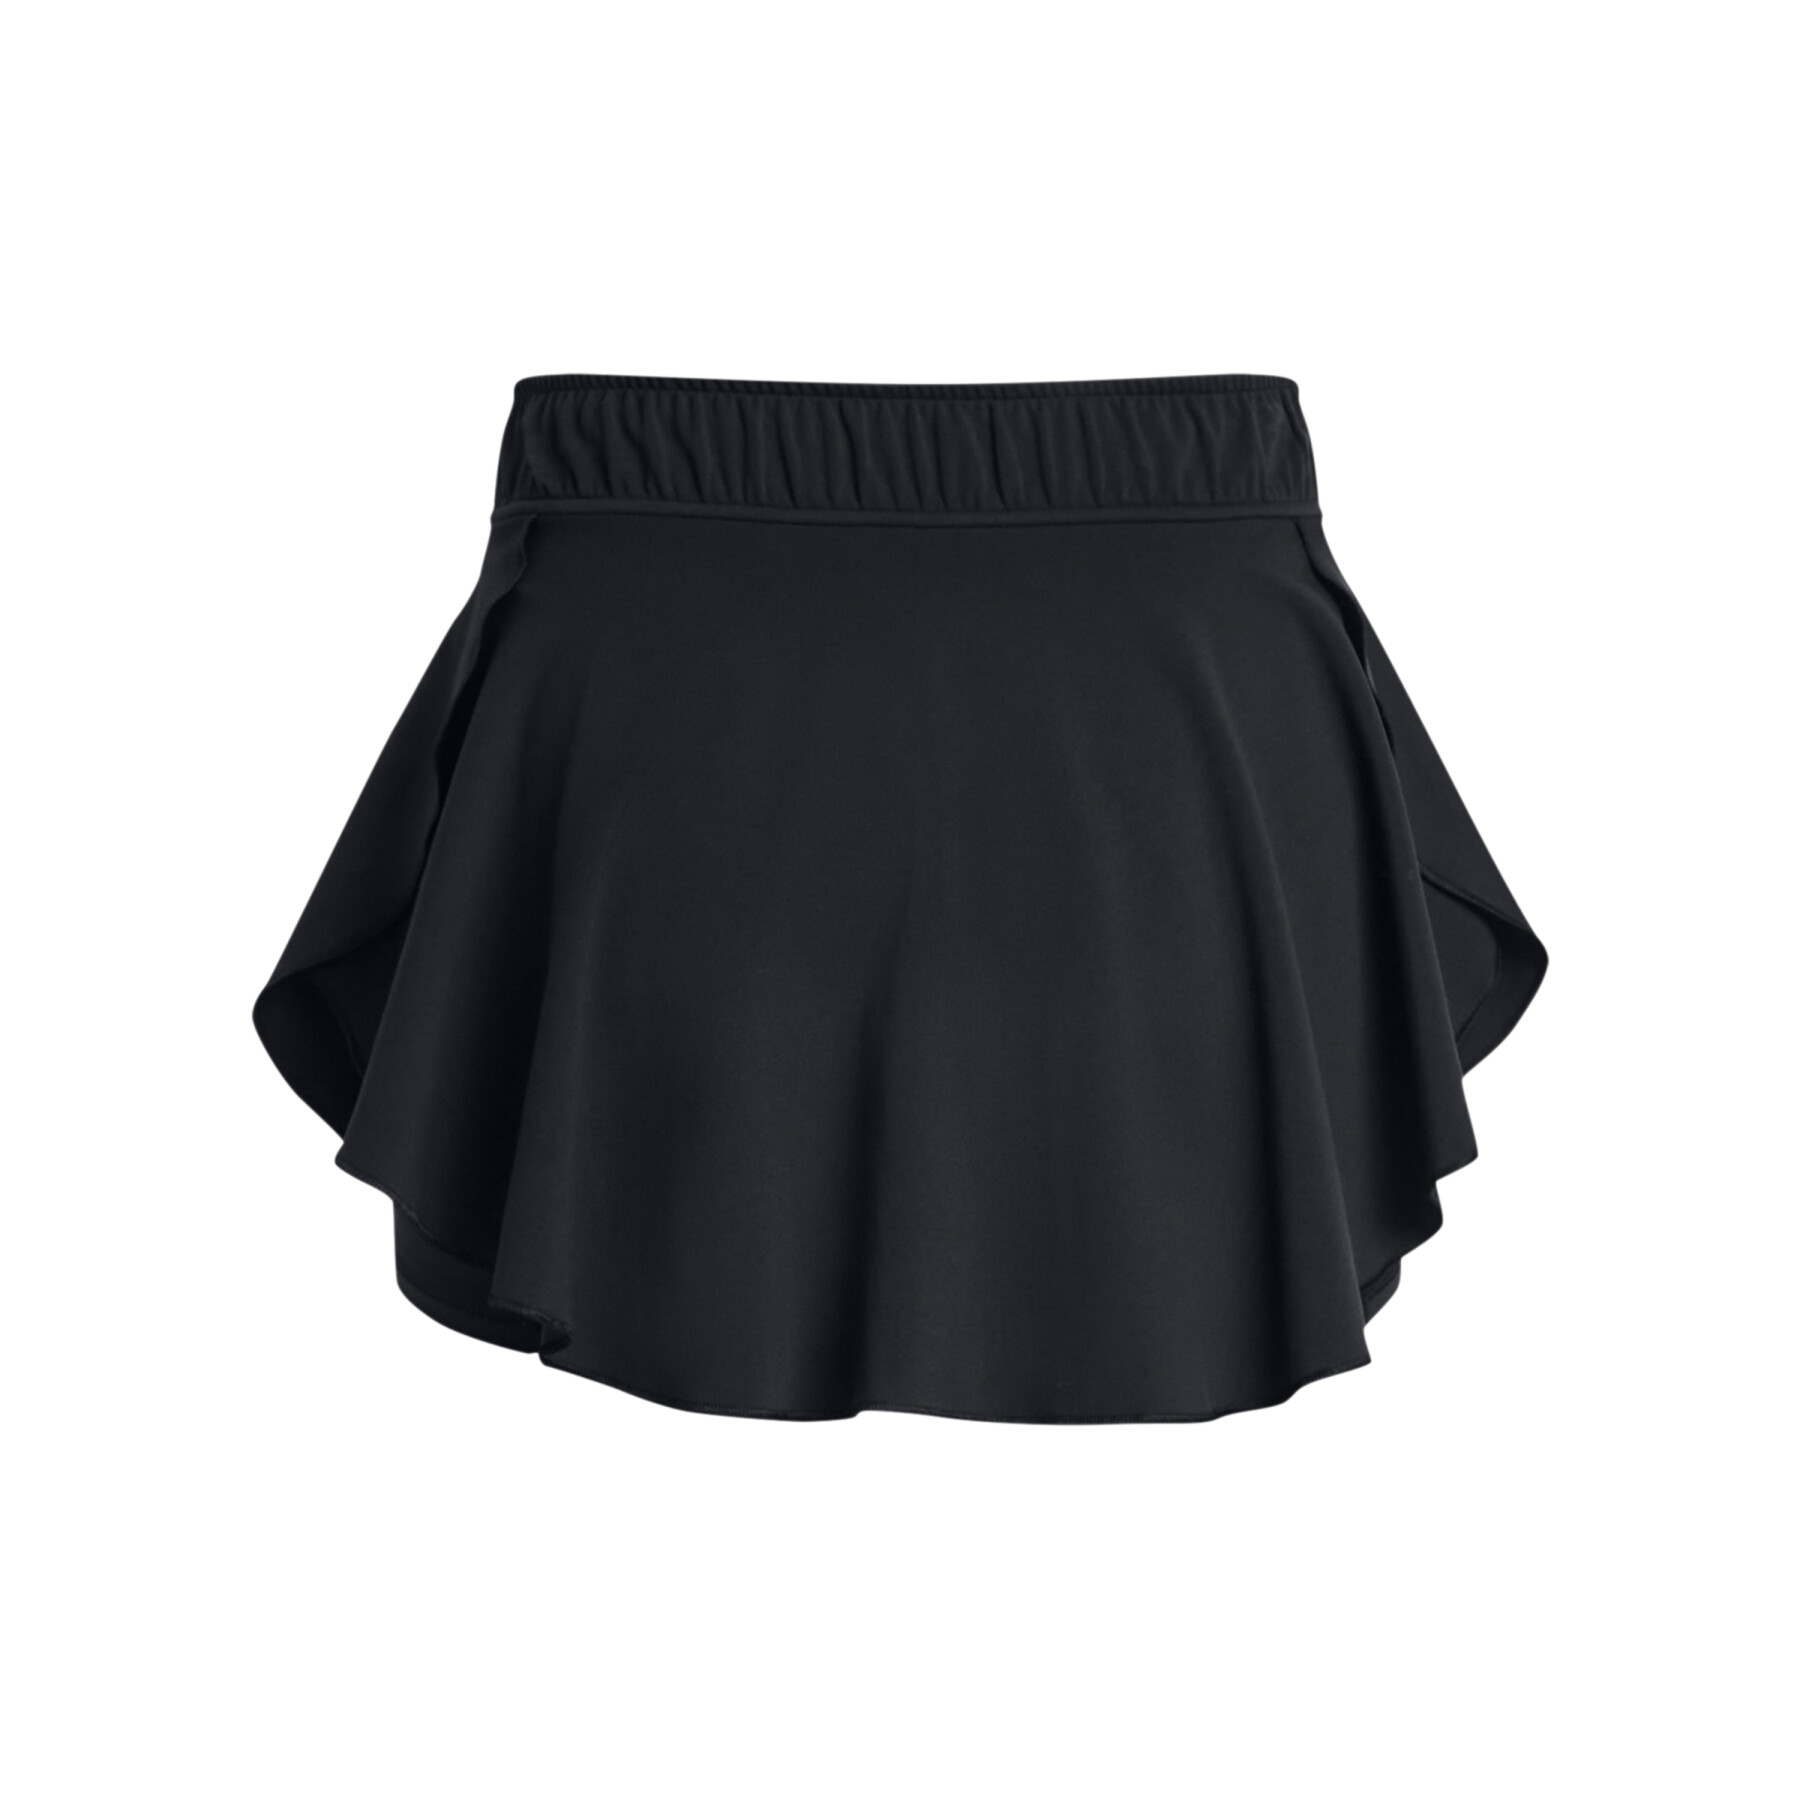 Women's skirt-short Under Armour Motion